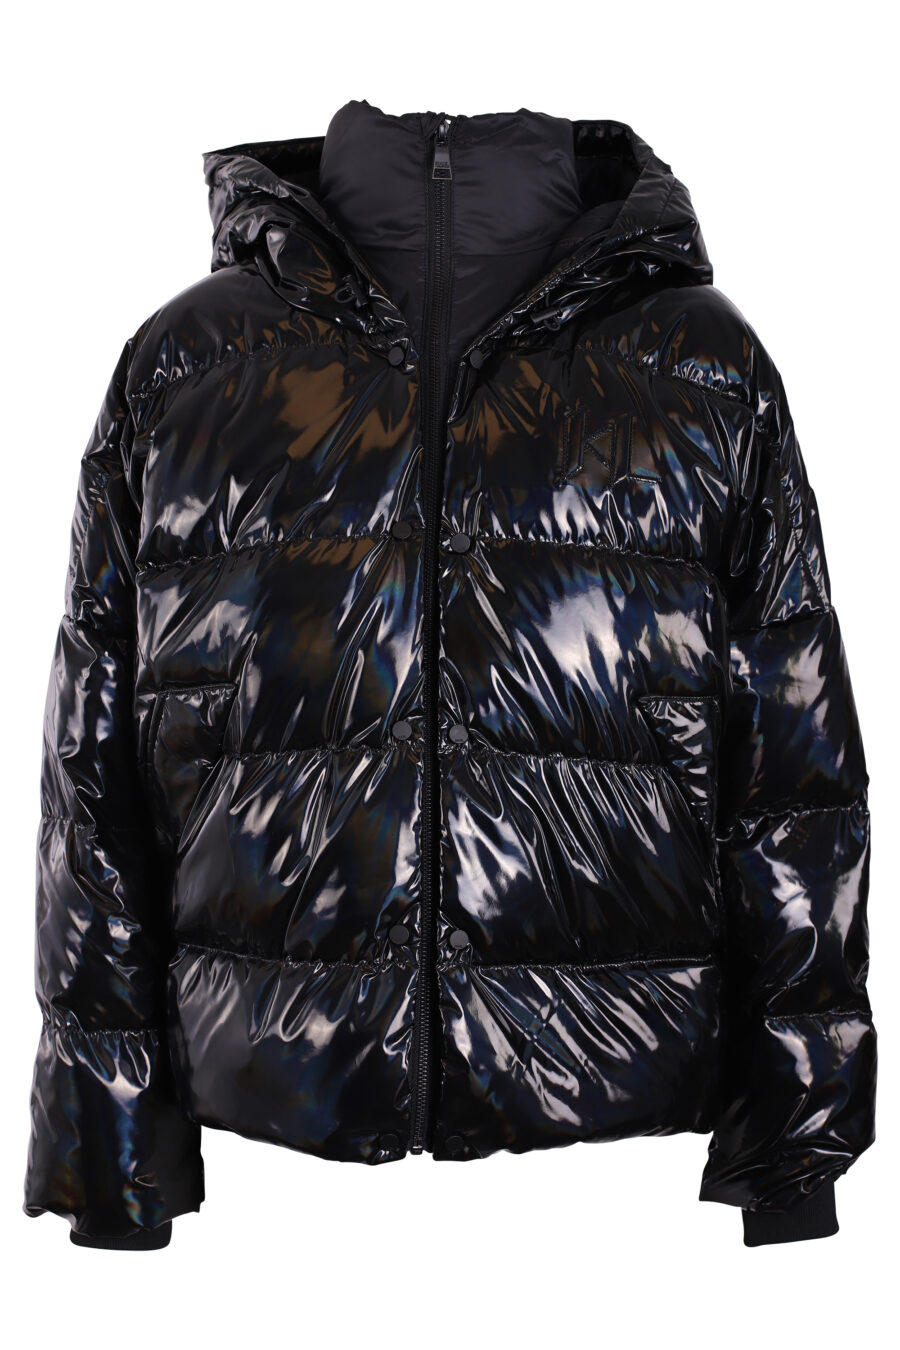 Iridescent black hooded jacket - IMG 3416